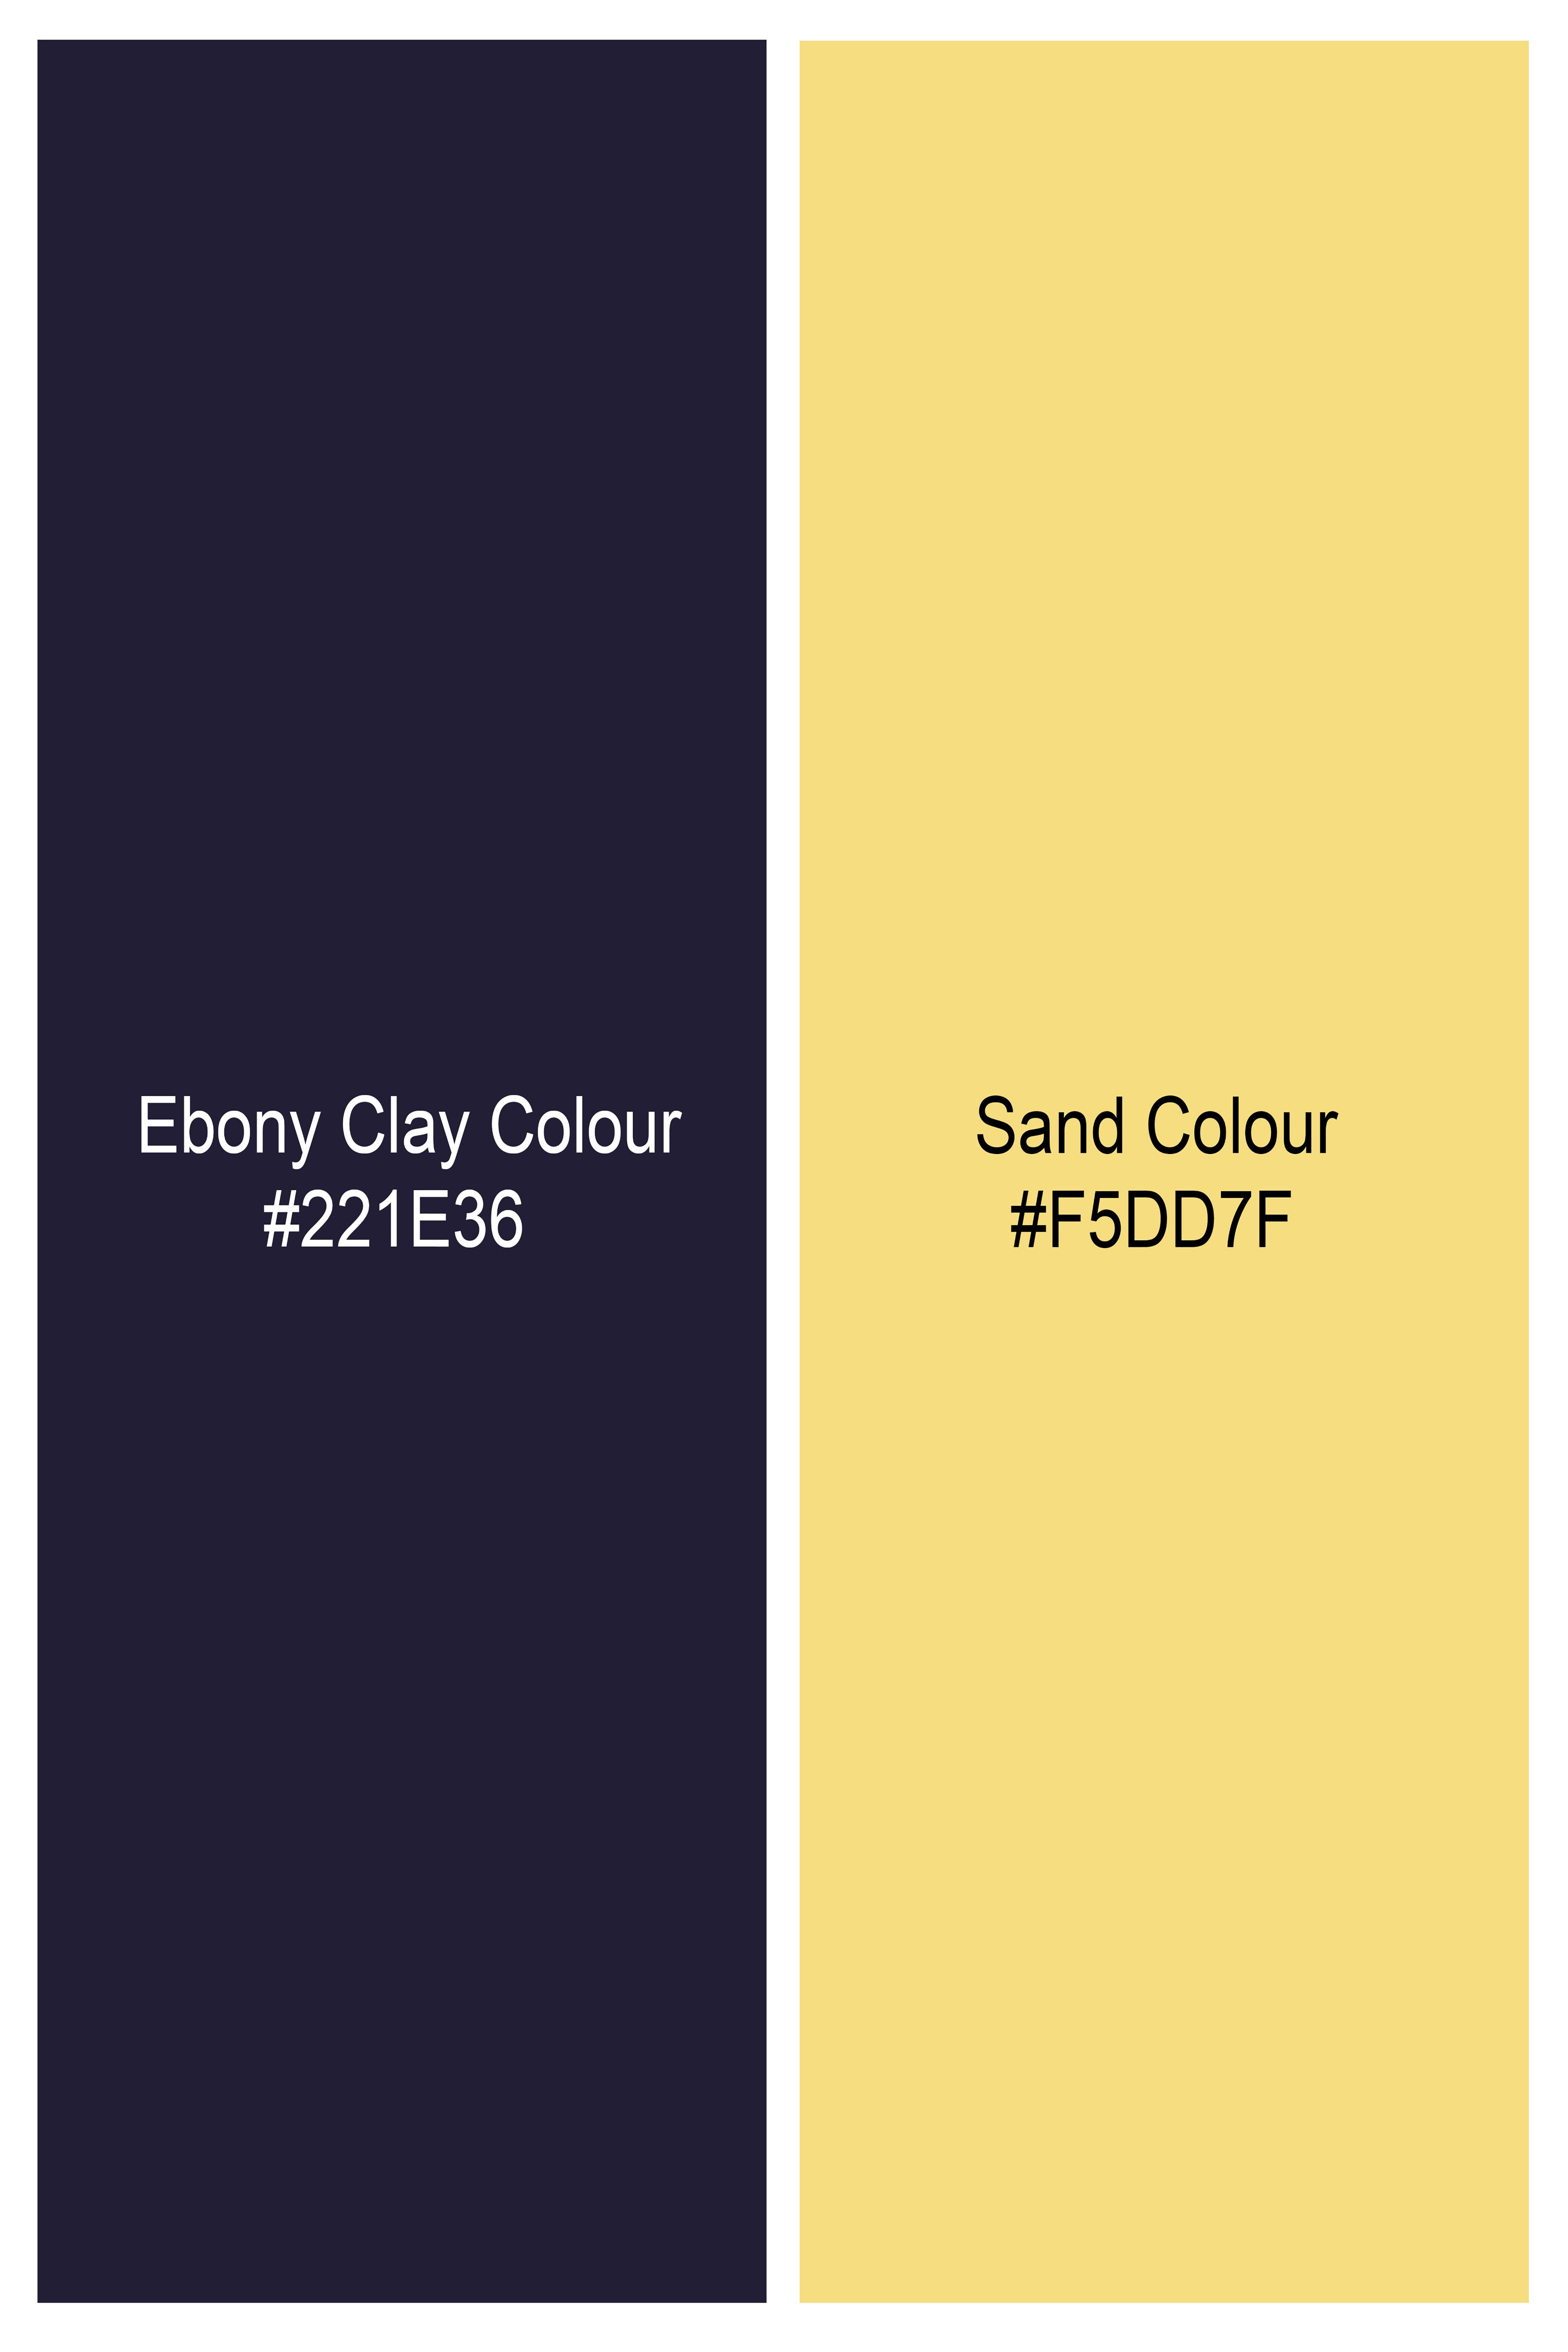 Ebony Clay Navy Blue Printed Lightweight Premium Cotton Oversized Shirt 10071-CC-OSS-SS-38,10071-CC-OSS-SS-39,10071-CC-OSS-SS-40,10071-CC-OSS-SS-42,10071-CC-OSS-SS-44,10071-CC-OSS-SS-46,10071-CC-OSS-SS-48,10071-CC-OSS-SS-50,10071-CC-OSS-SS-52